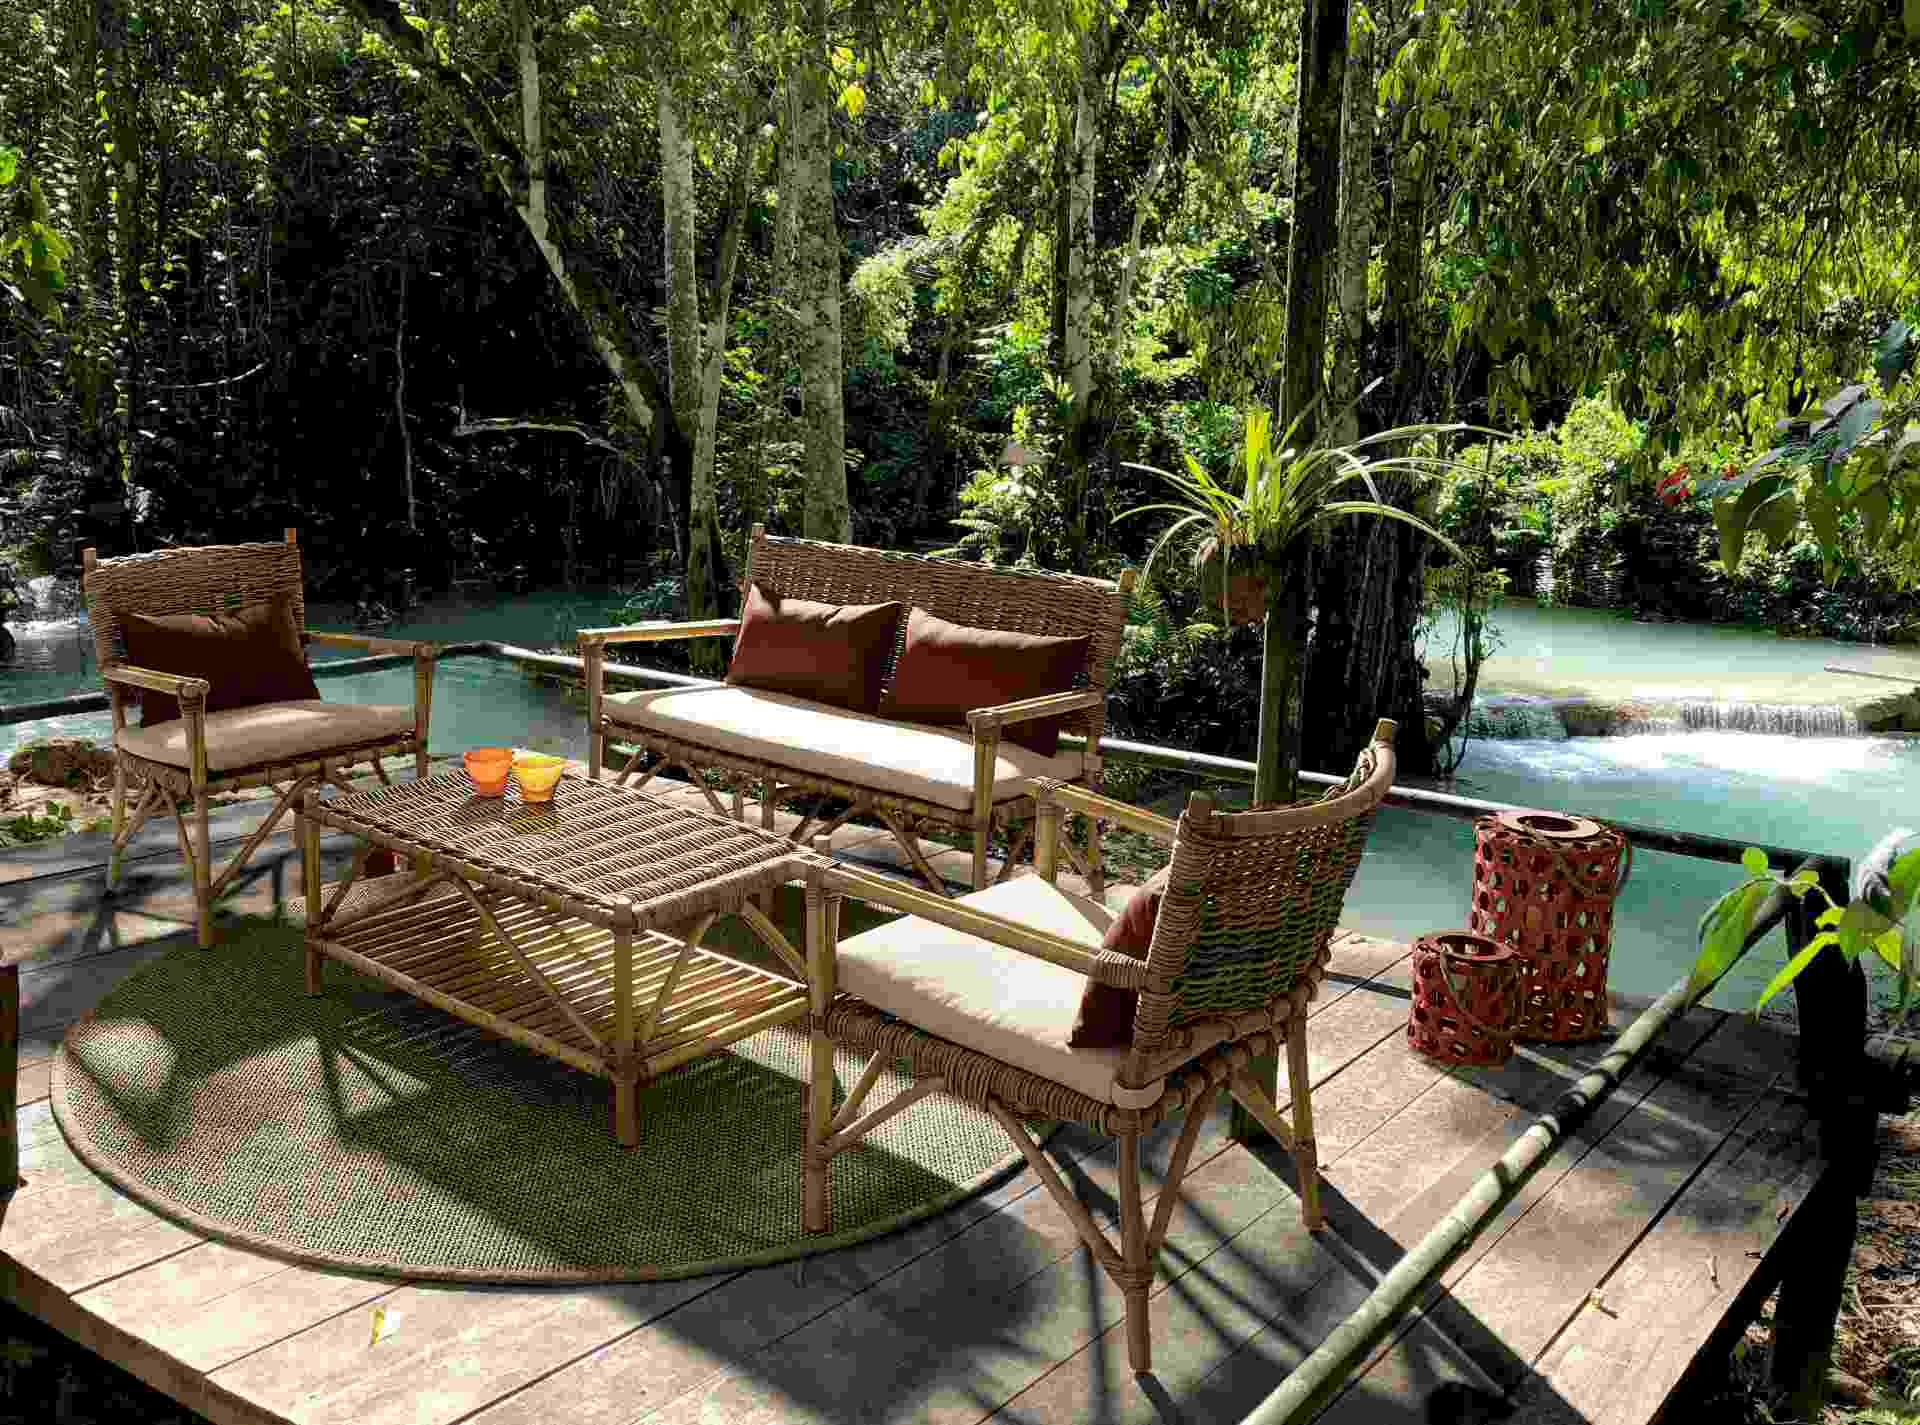 Der Gartensessel Tarifa überzeugt mit seinem klassischen Design. Gefertigt wurde er aus Kubu, welches einen braunen Farbton besitzt. Das Gestell ist aus Rattan und hat eine natürliche Farbe. Der Sessel verfügt über eine Sitzhöhe von 43 cm und ist für den 